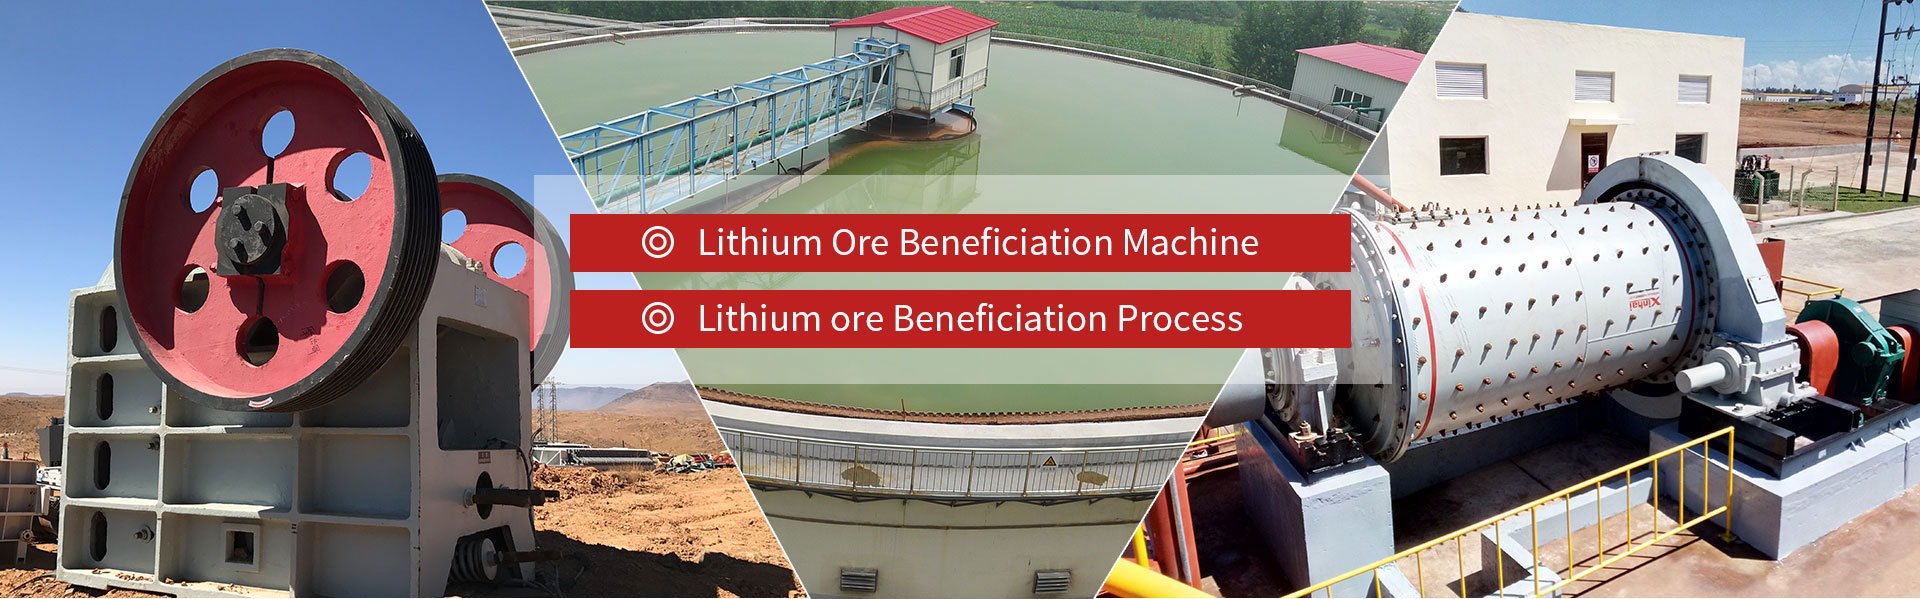 Lithium ore beneficiation machine Lithium ore beneficiation process